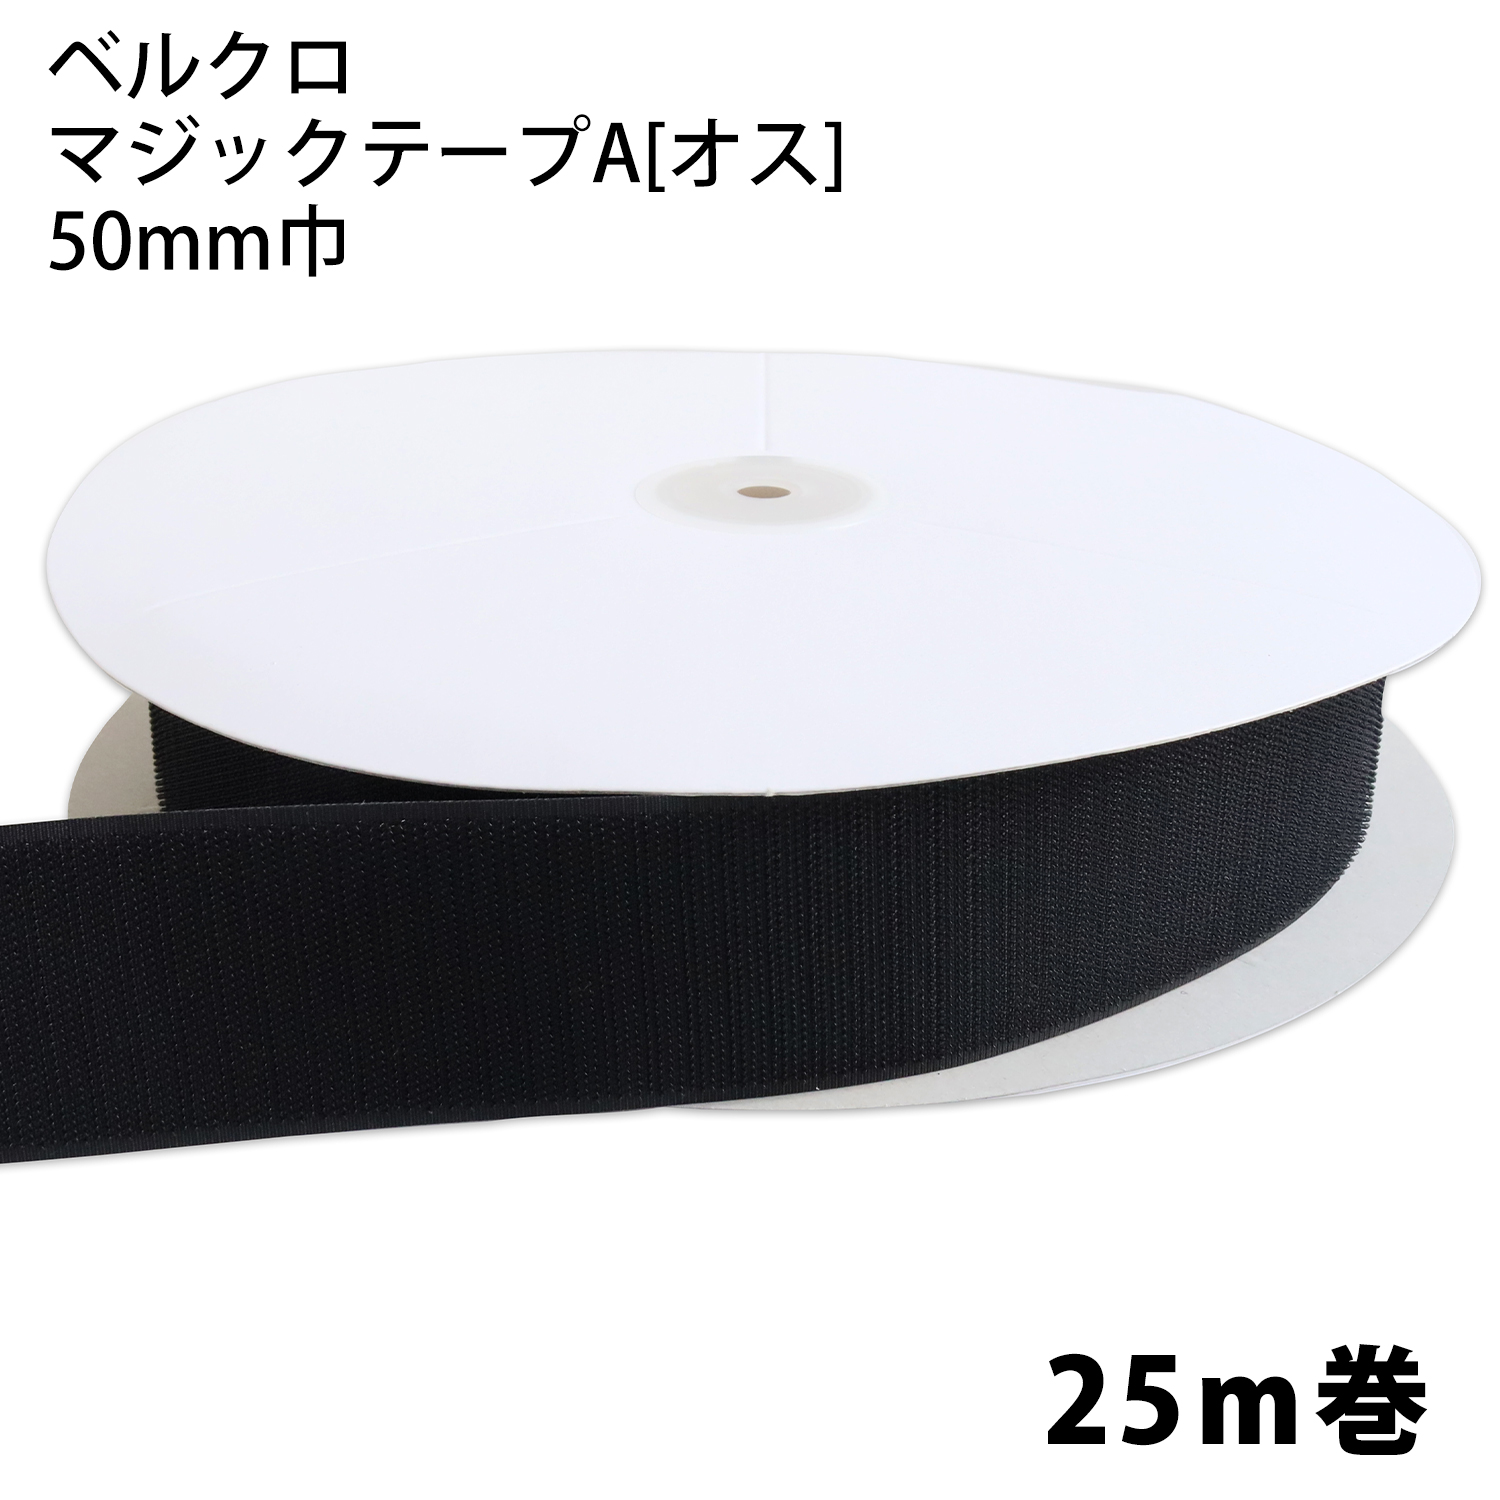 F11-BER50-25A-2ベルクロ マジックテープ A[オス] 50mm巾×25m巻 黒 (巻)